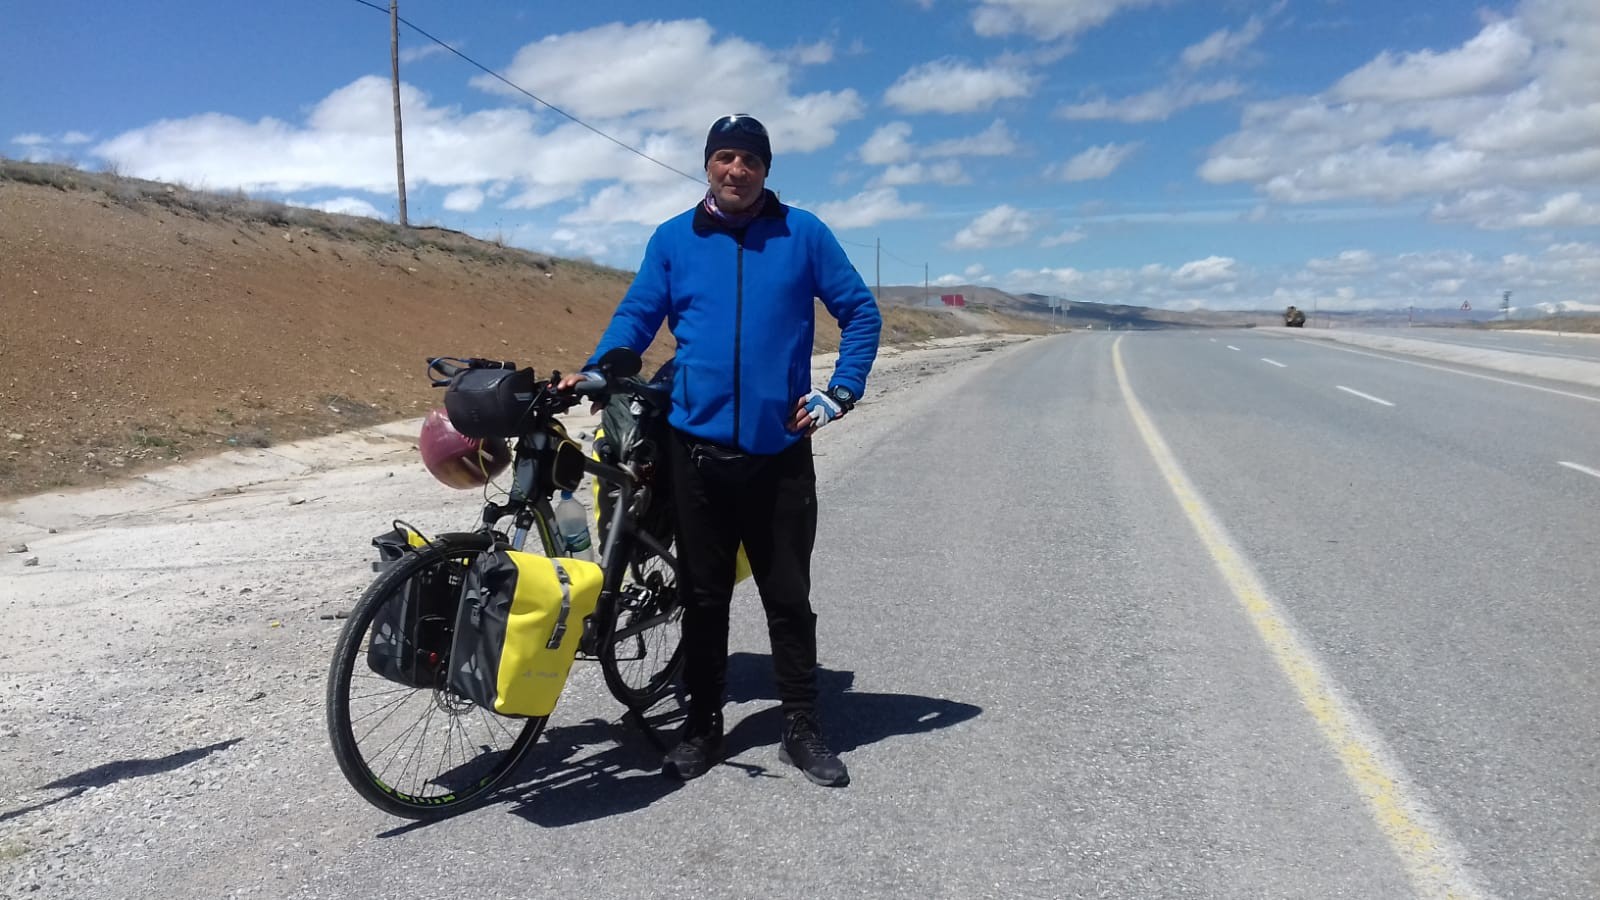 58 Yaşında Bisikletle Türkiye’yi Turluyor,5 Yılda 48.000 Km Yol Katettti.